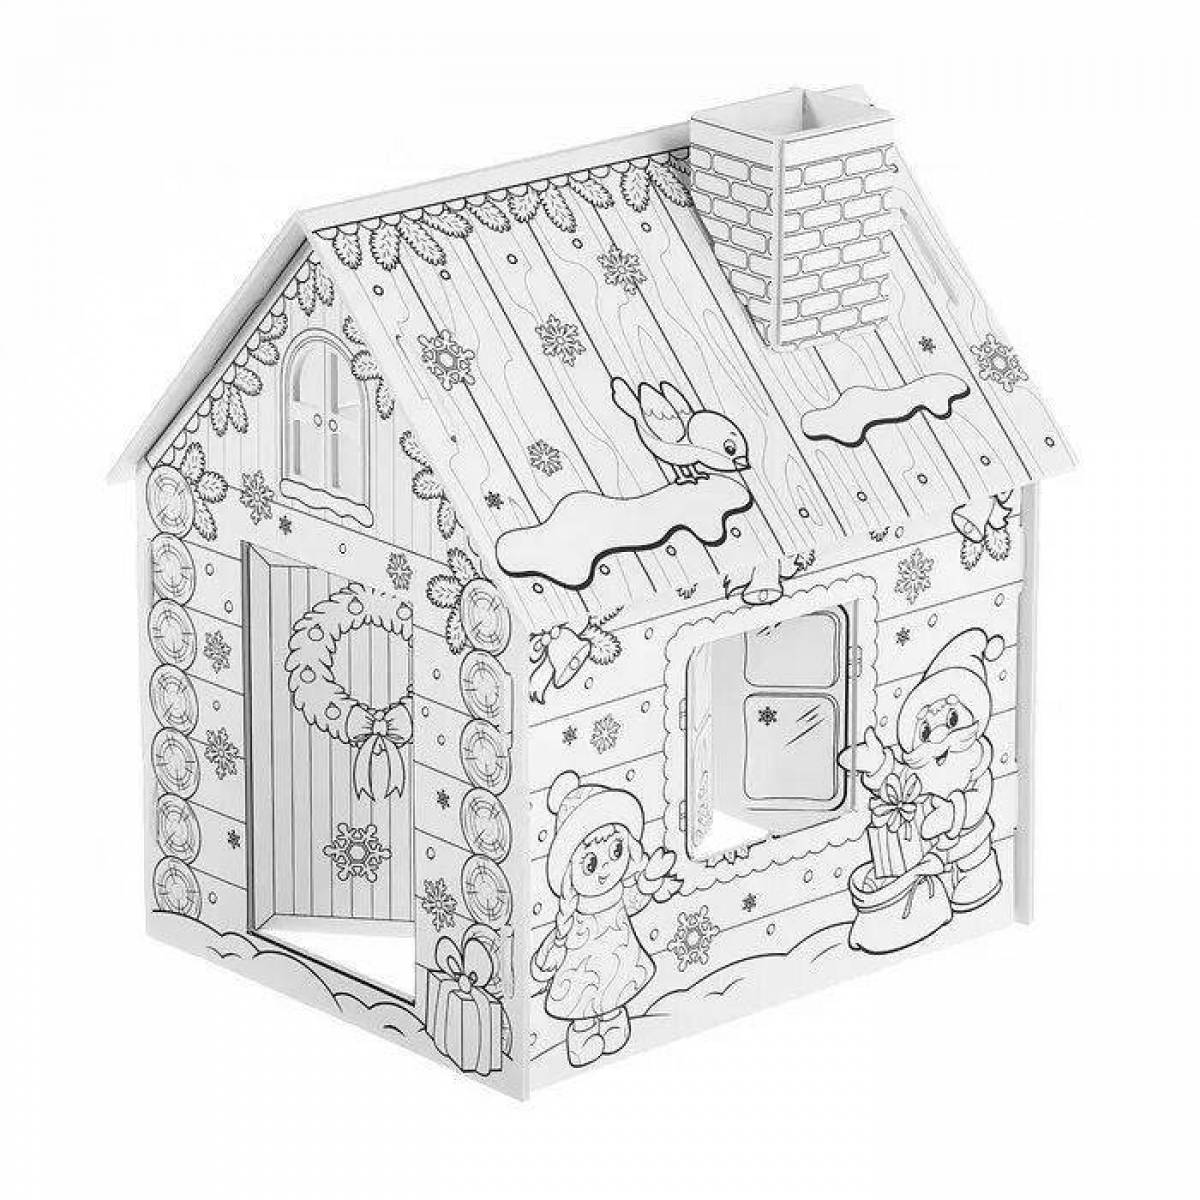 Фото Увлекательный картонный домик с фиксированной ценой раскраски